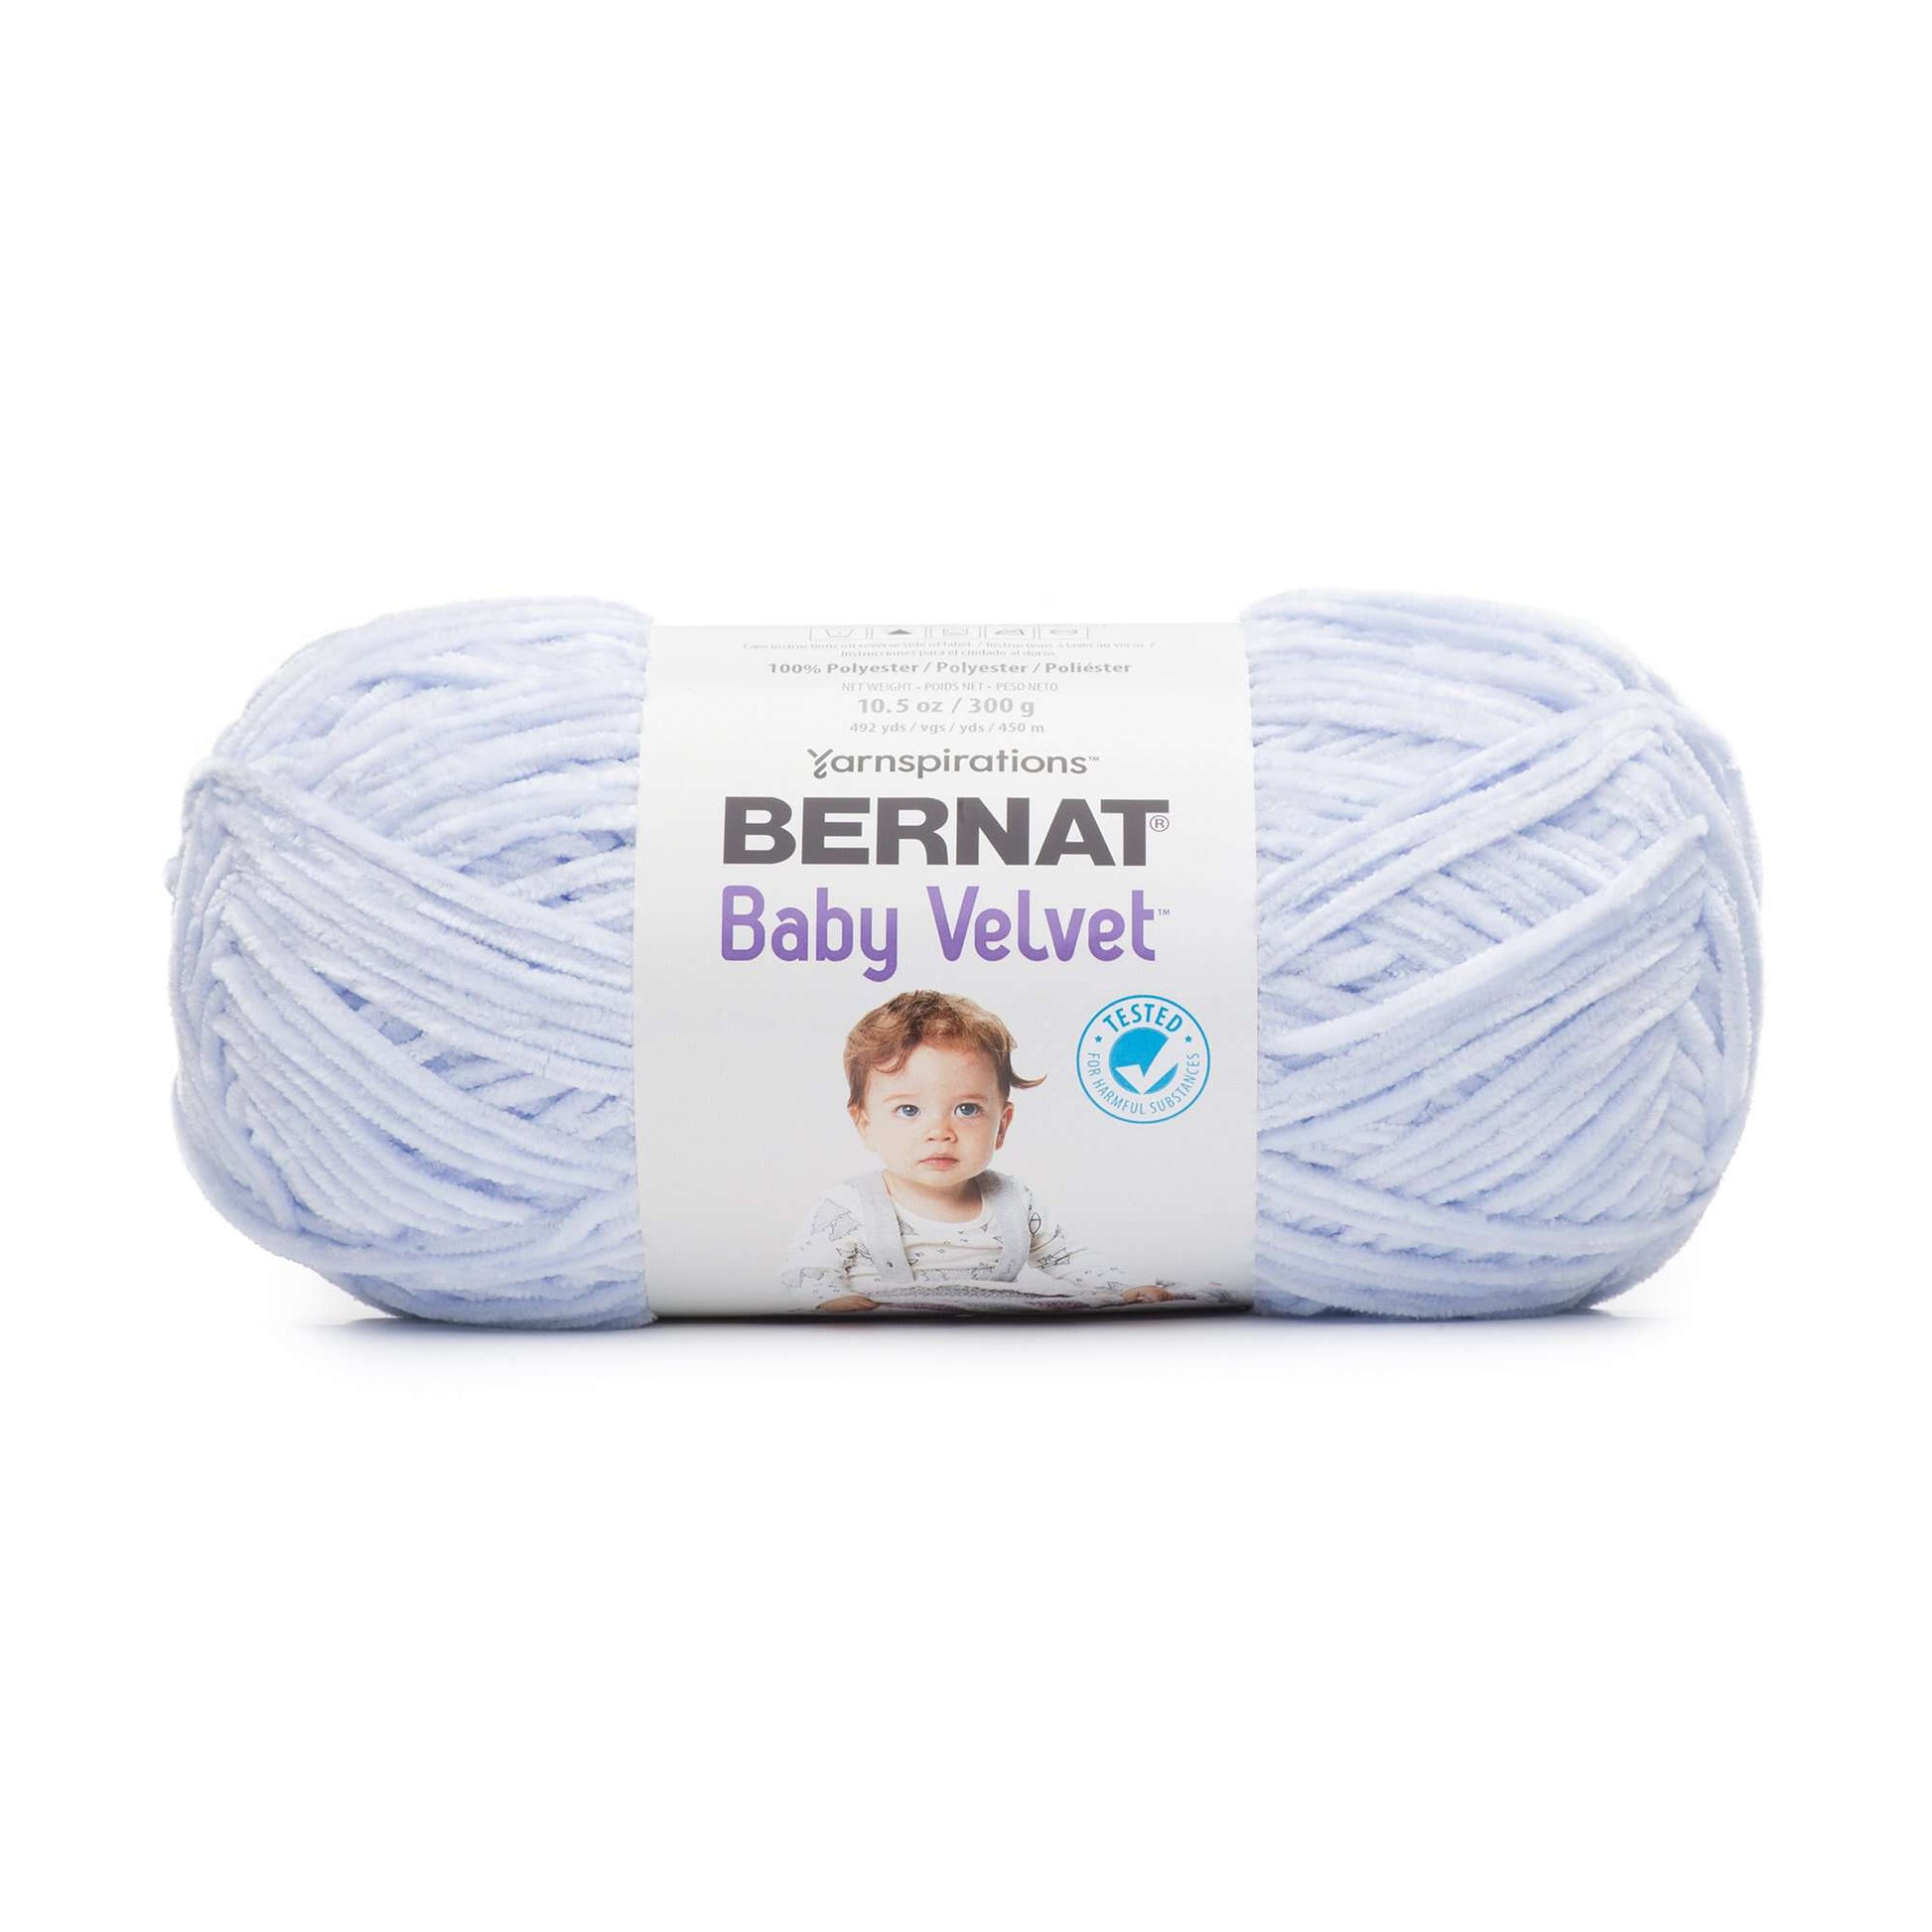 Bernat Baby Velvet Yarn, Sky Blue, 1 Count (Pack of 1)